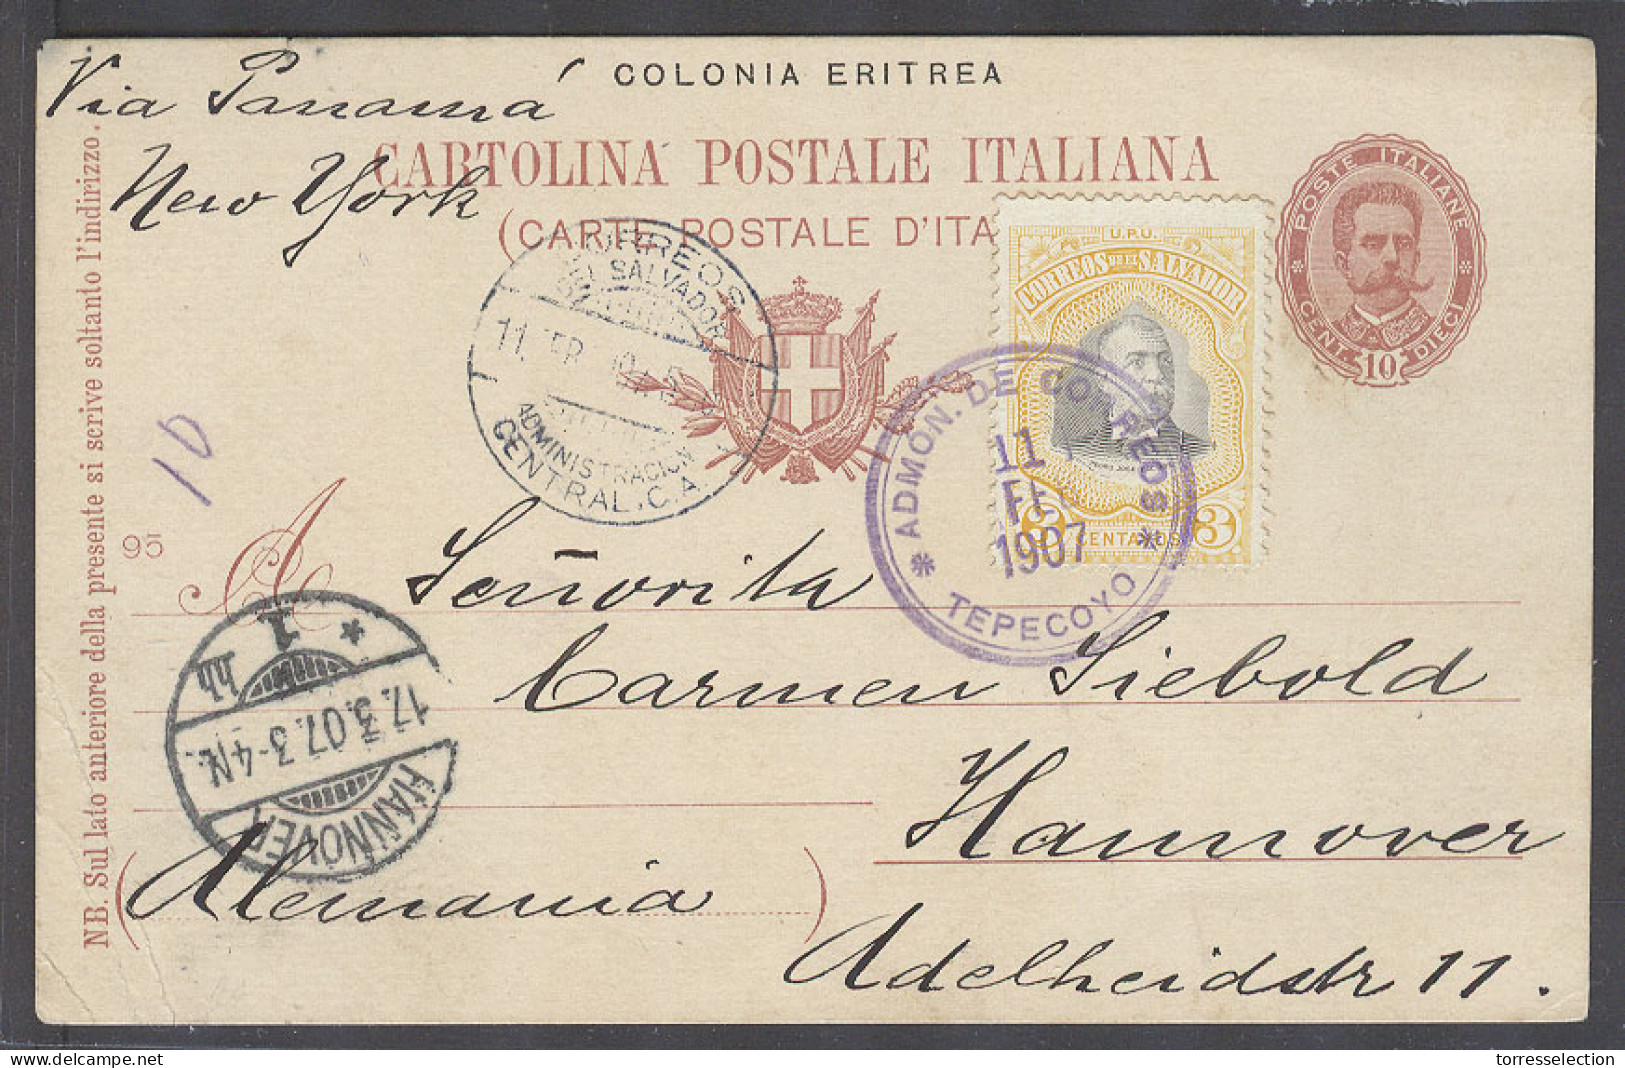 SALVADOR, EL. 1907 (11 Feb). Tepecoyo - Germany (17 March). Italy Eritrea Stat Ovptd Card Fkd At This Village. VF Nice M - El Salvador